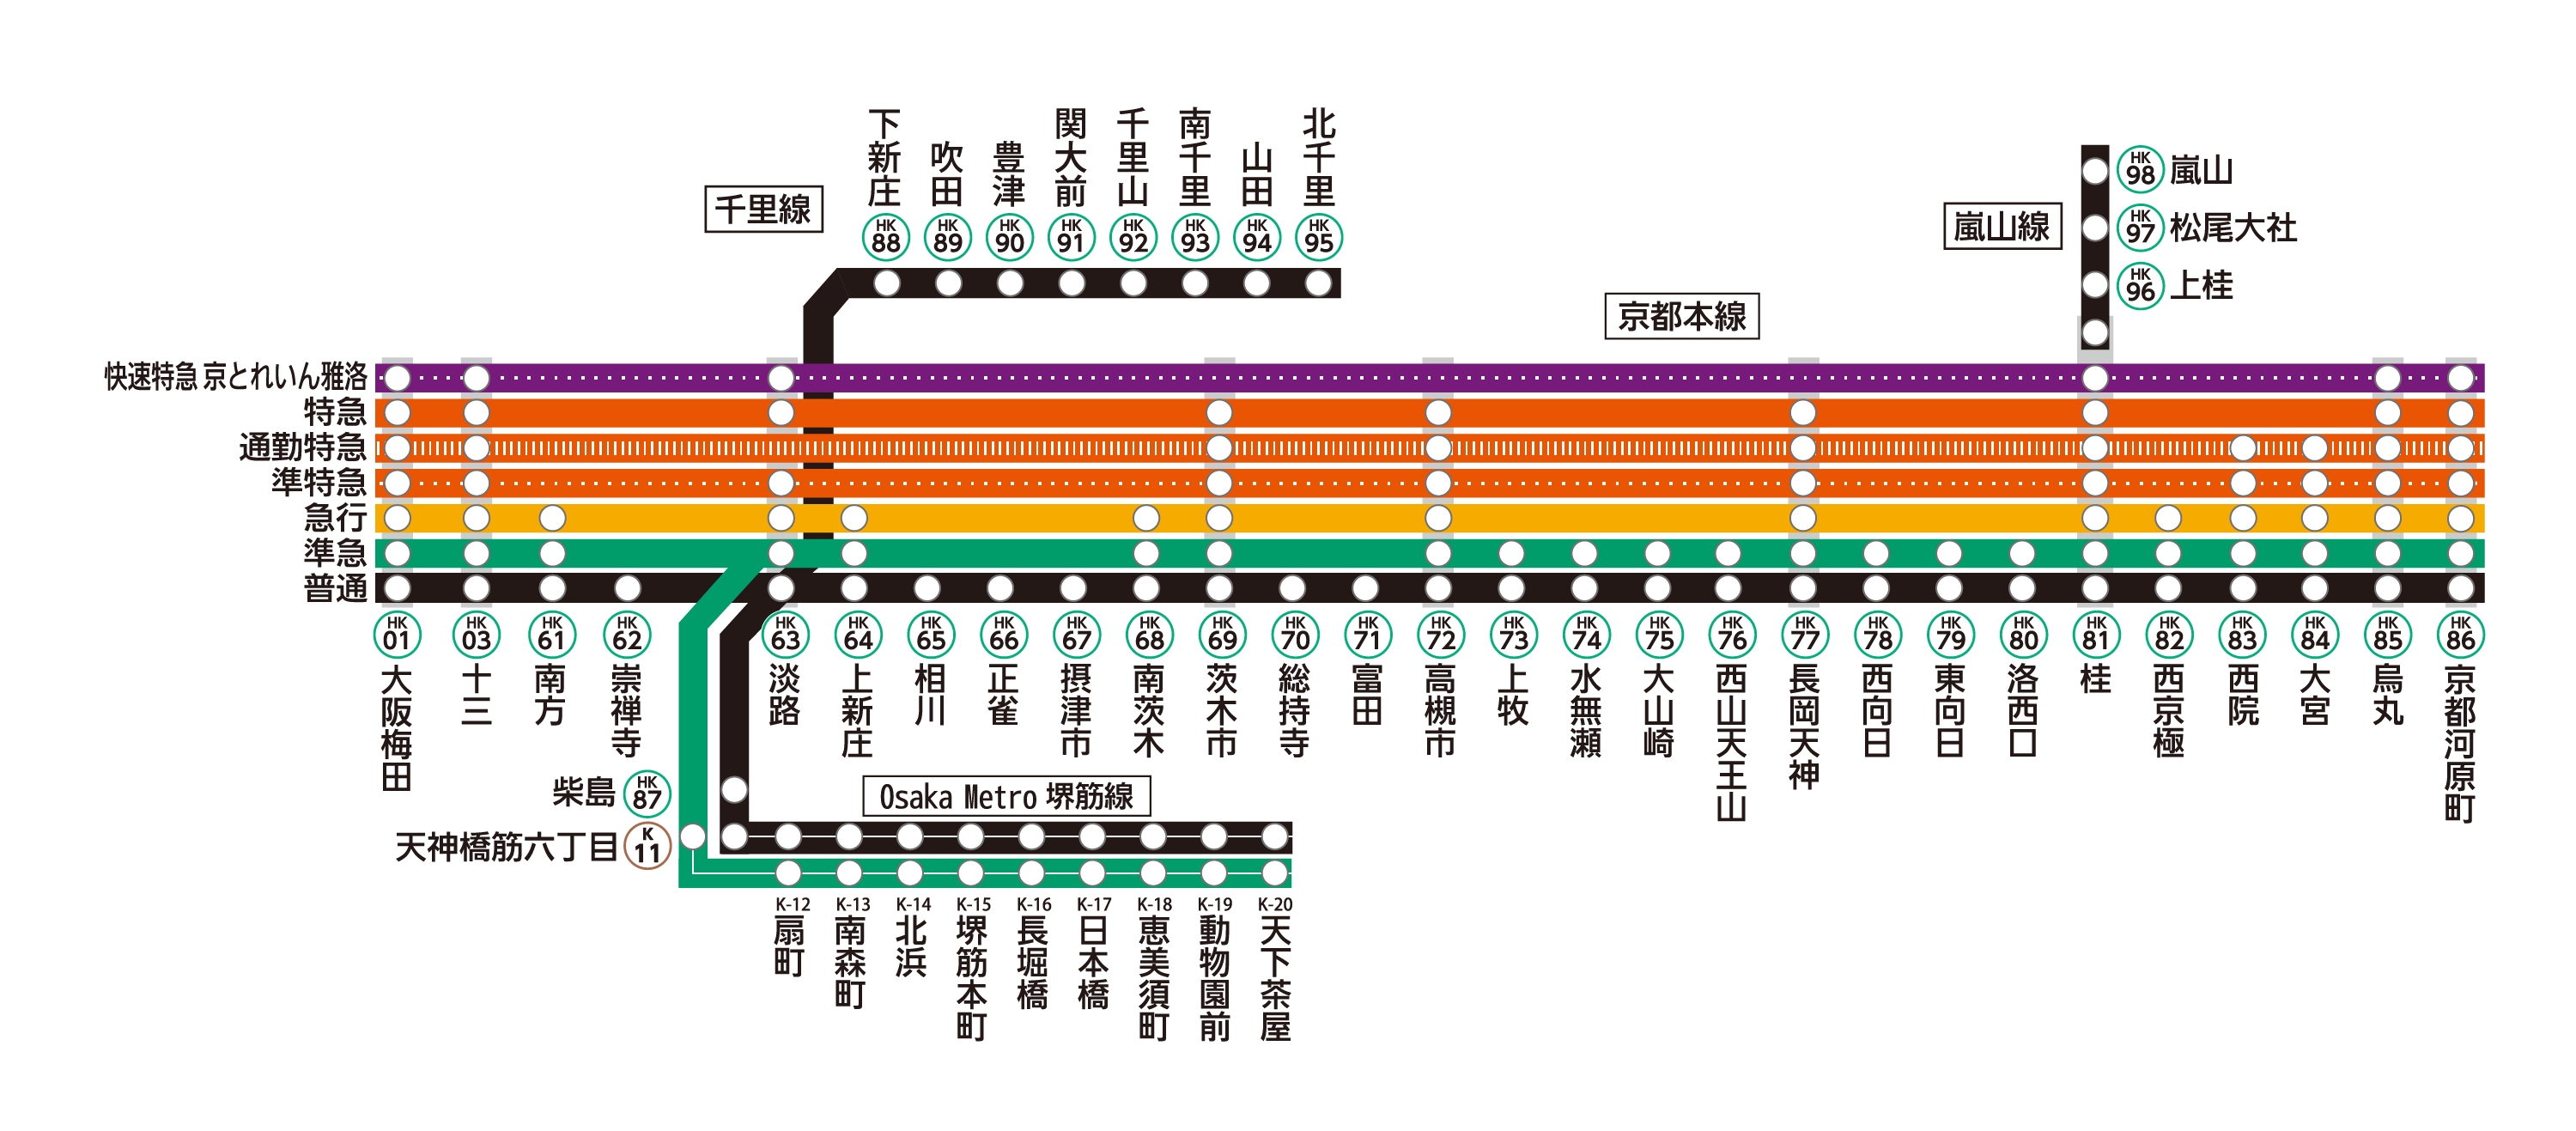 京都線は京都本線・千里線・嵐山線から構成されております。
京都線各駅の列車発車時刻や停車駅は、ページ下部の「駅を探す」から、各駅の時刻表ページをご確認ください。